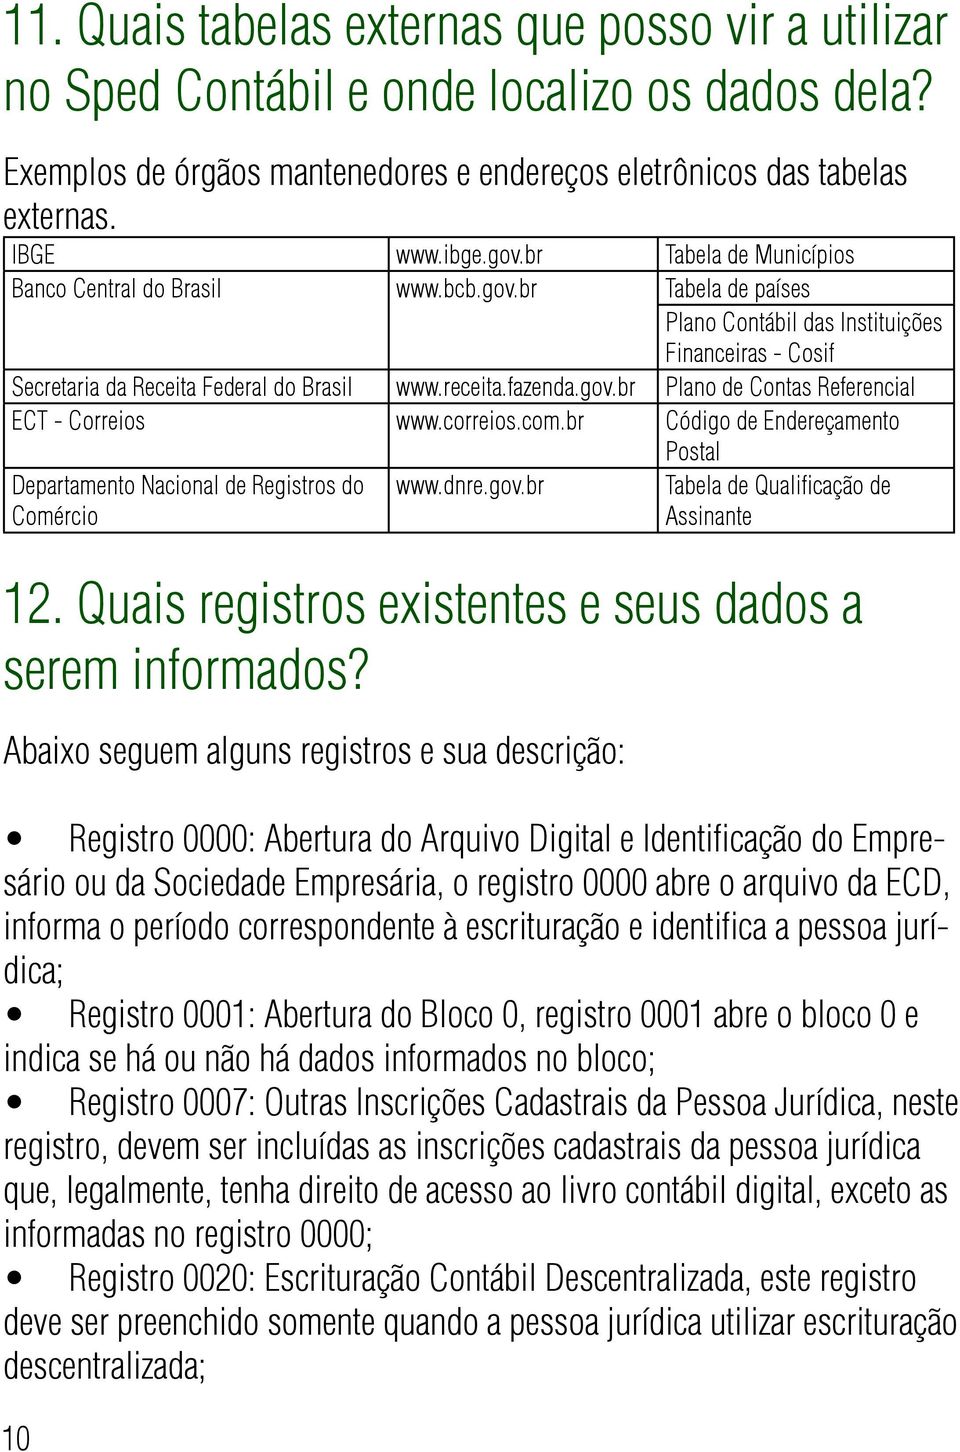 correios.com.br Código de Endereçamento Departamento Nacional de Registros do Comércio 10 www.dnre.gov.br Postal Tabela de Qualificação de Assinante 12.